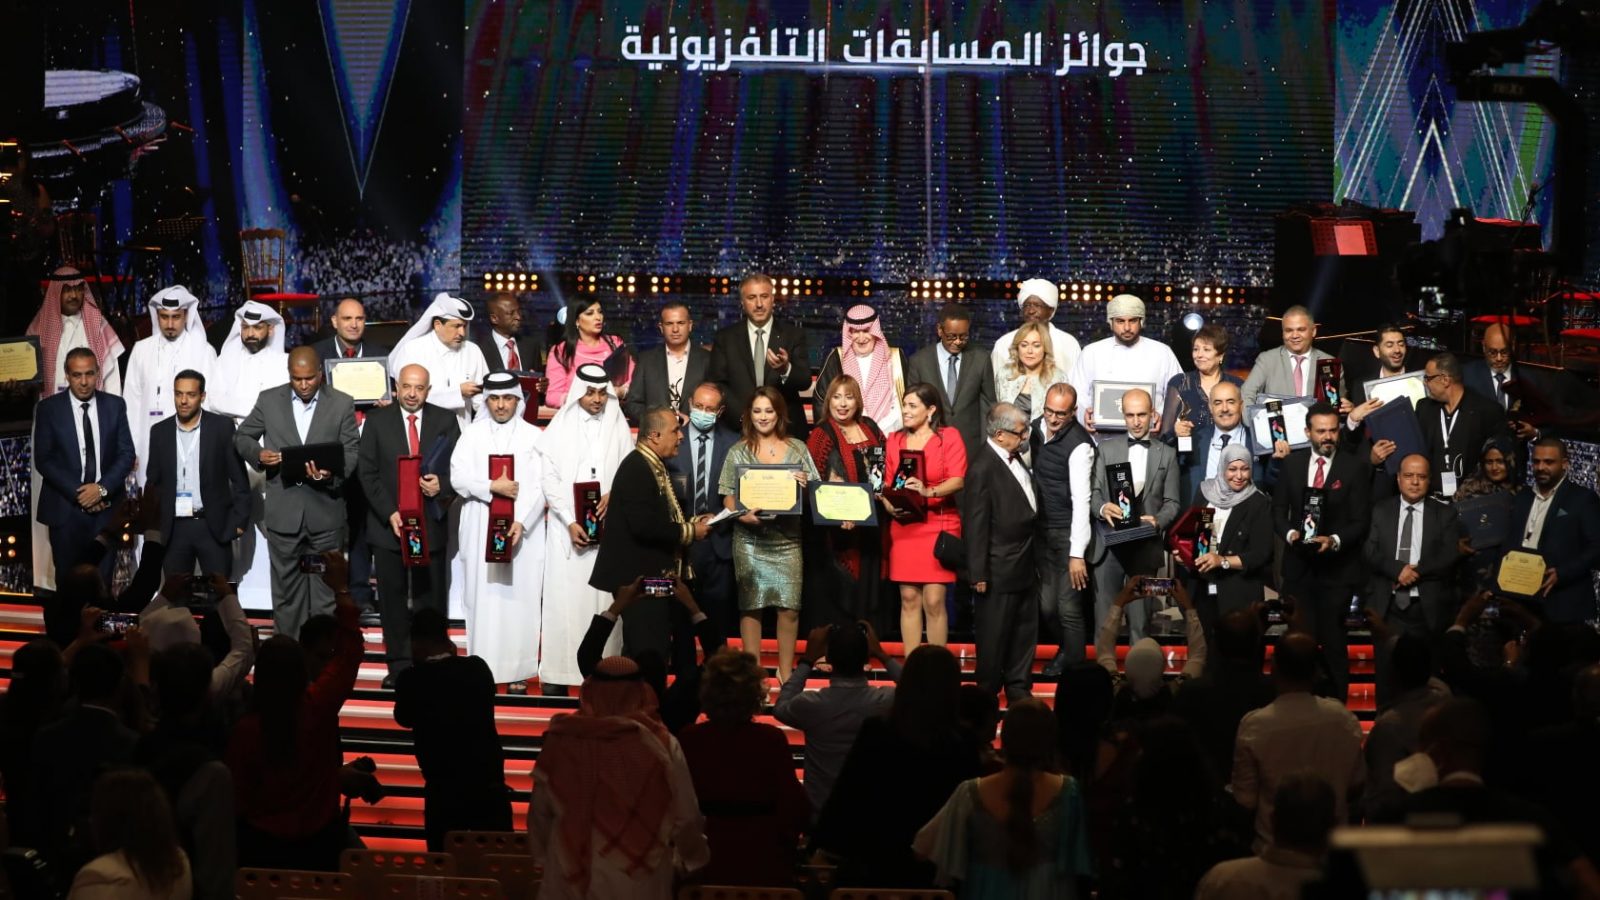 جوائز بالجملة لتونس في اختتام المهرجان العربي للإذاعة والتلفزيون